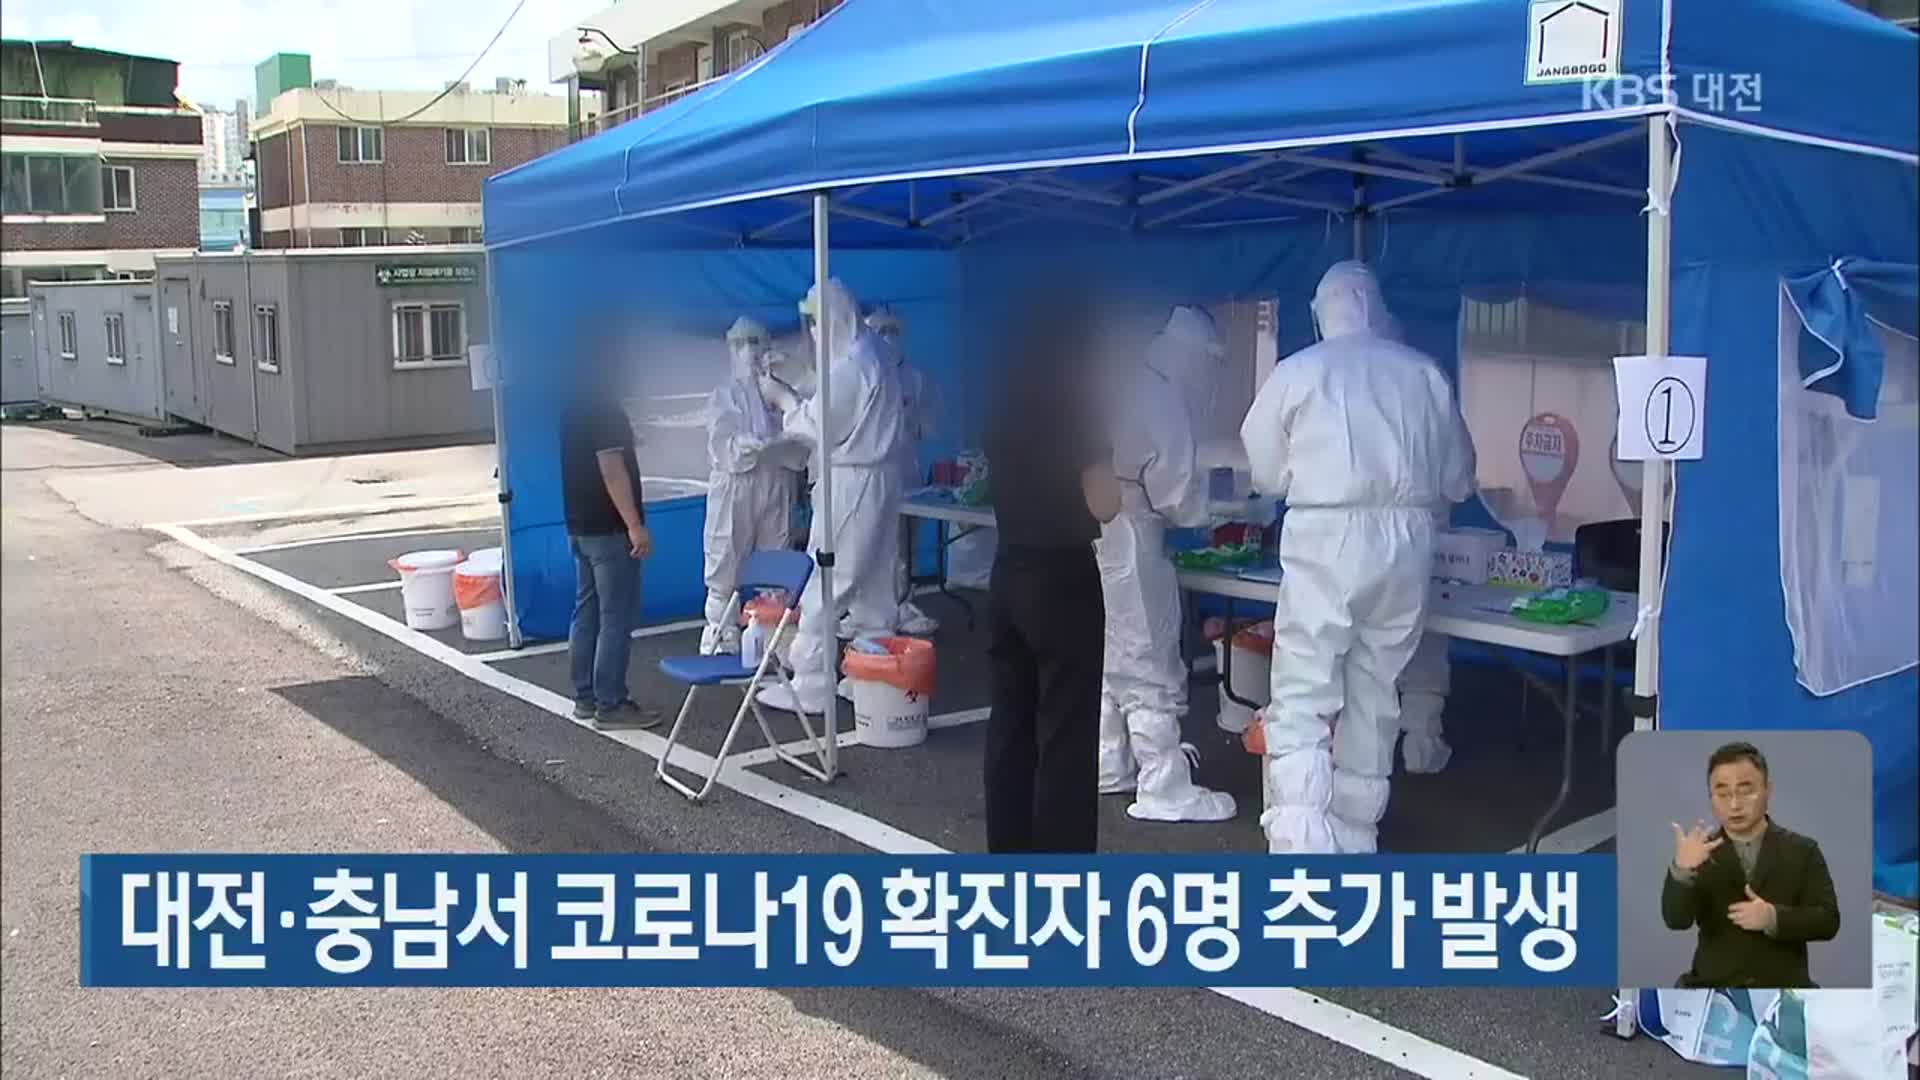 대전·충남서 코로나19 확진자 6명 추가 발생